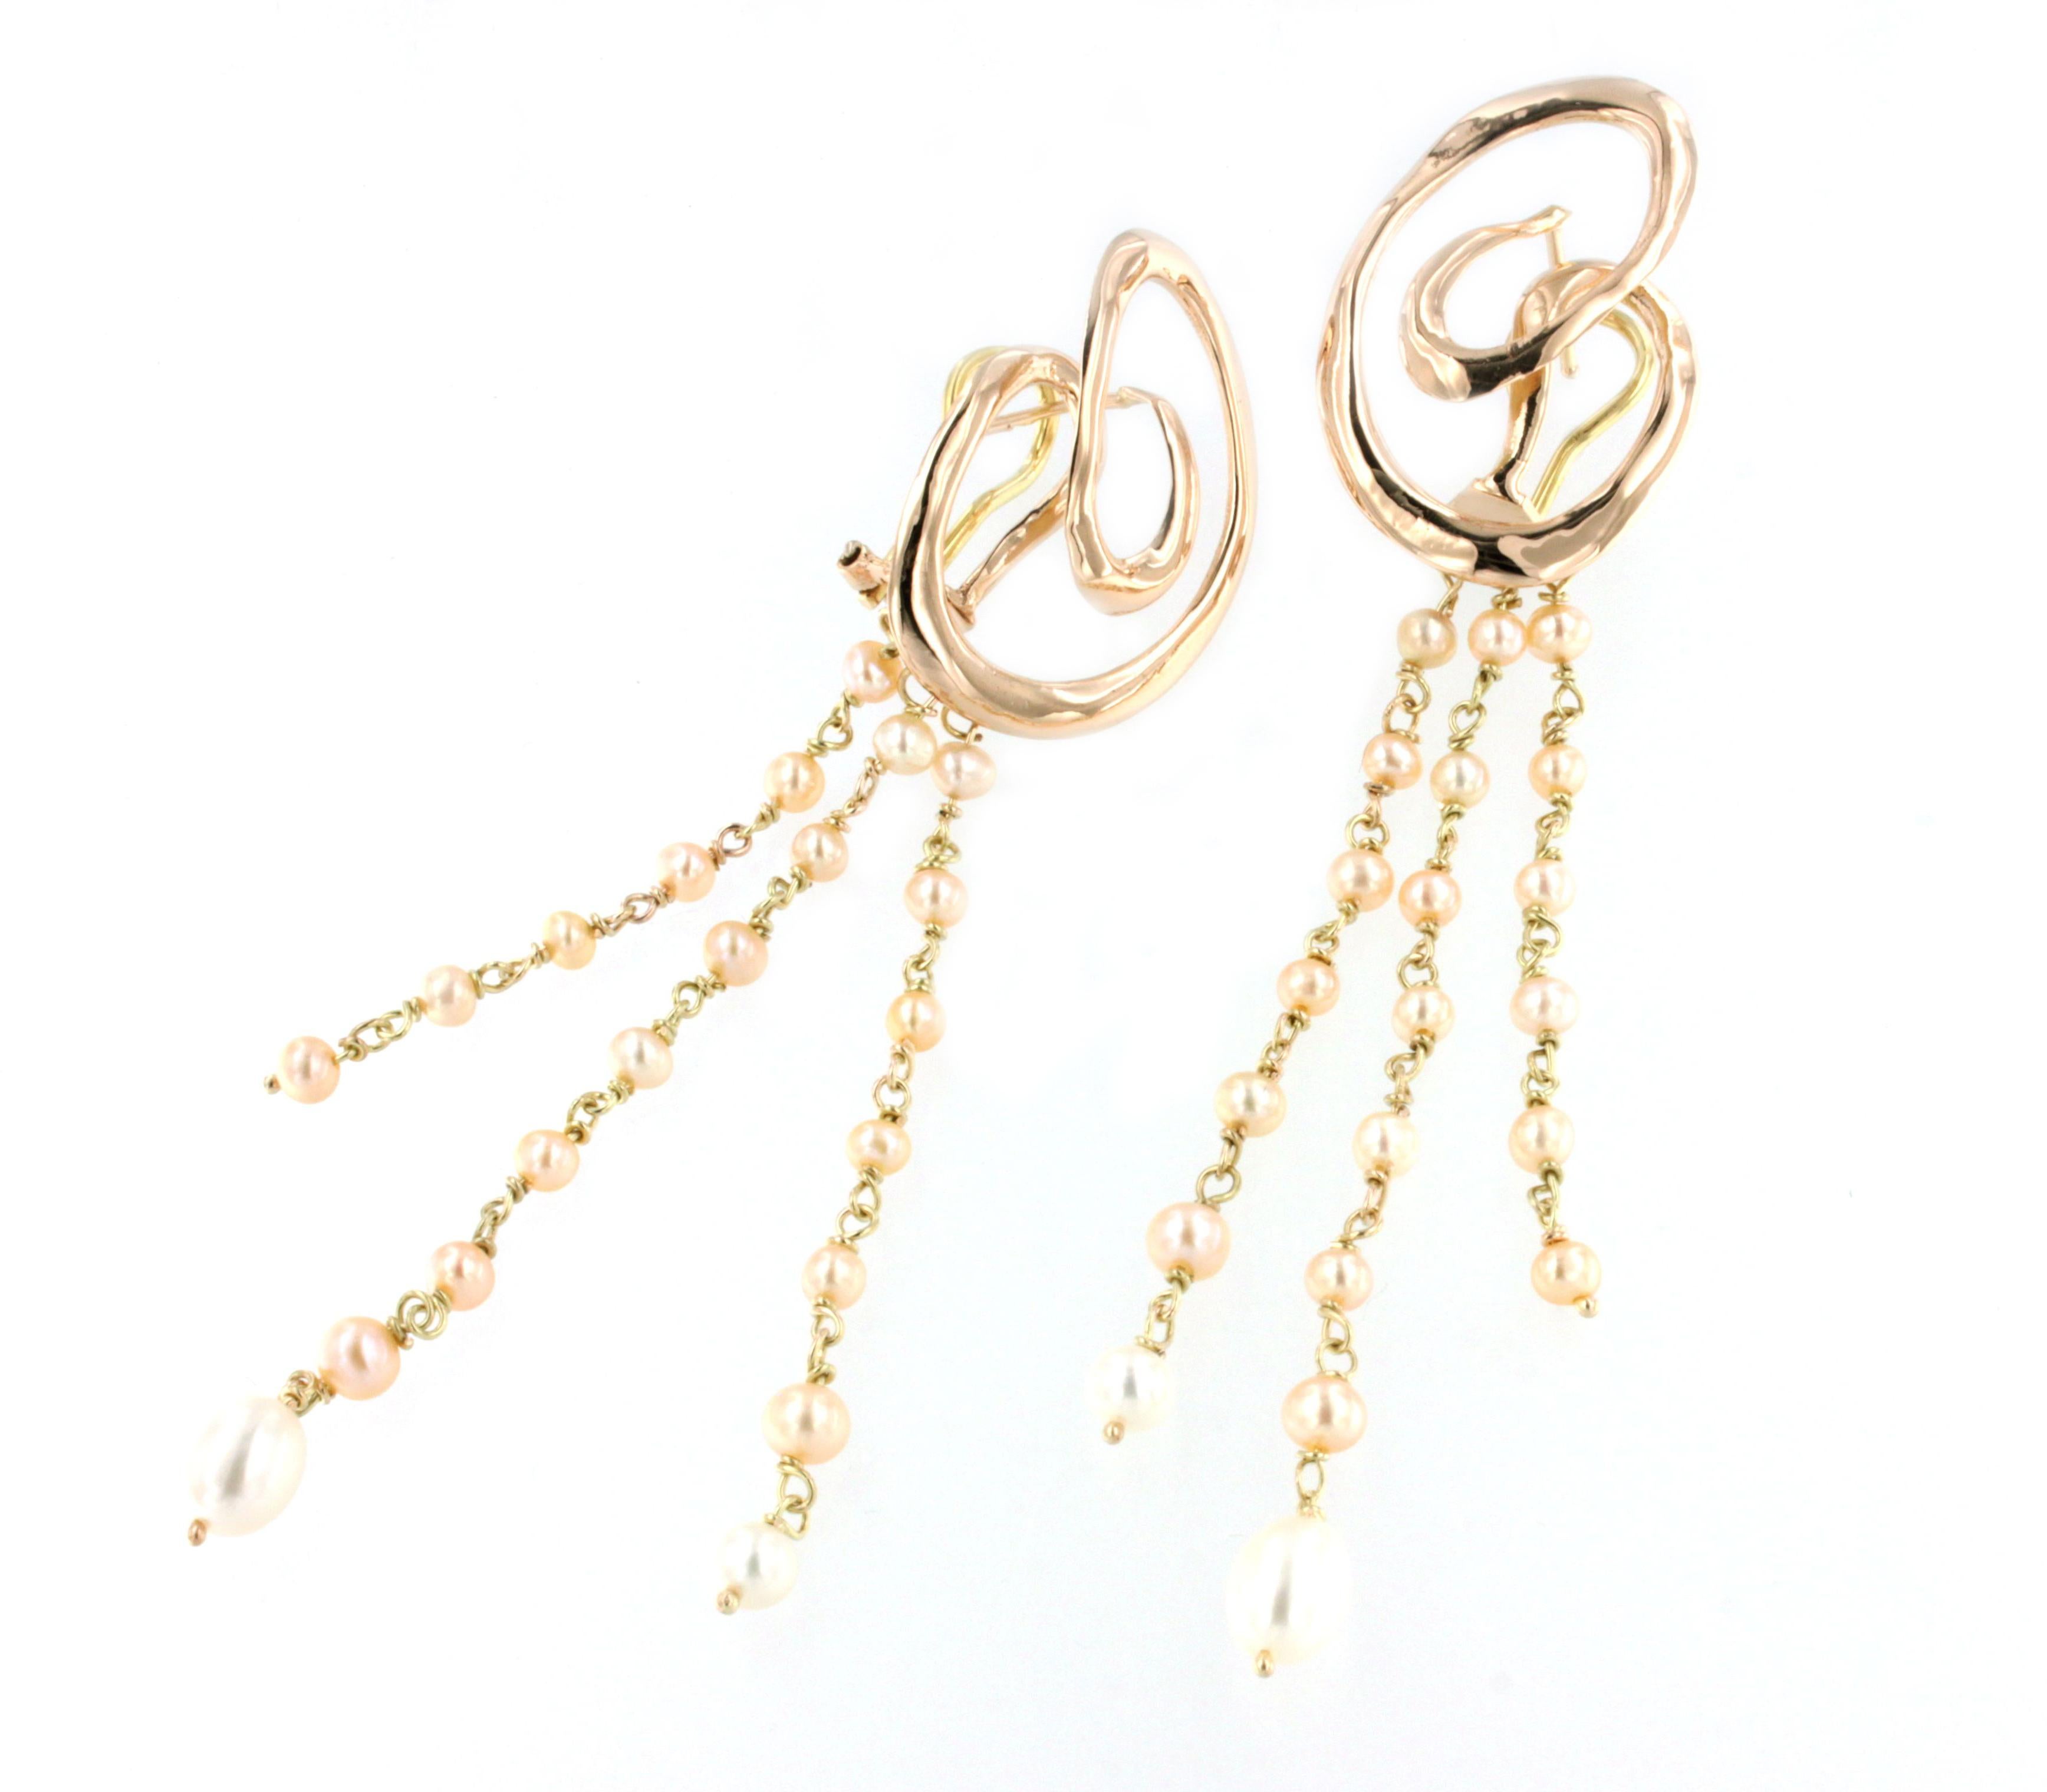 Moderne, élégant, boucles d'oreilles pendantes en or blanc 18kt, avec des perles . Fabriqué à la main en Italie par Stanoppi Jewellery depuis 1948. Tous nos bijoux sont fabriqués uniquement dans notre laboratoire par des orfèvres experts.

Longueur